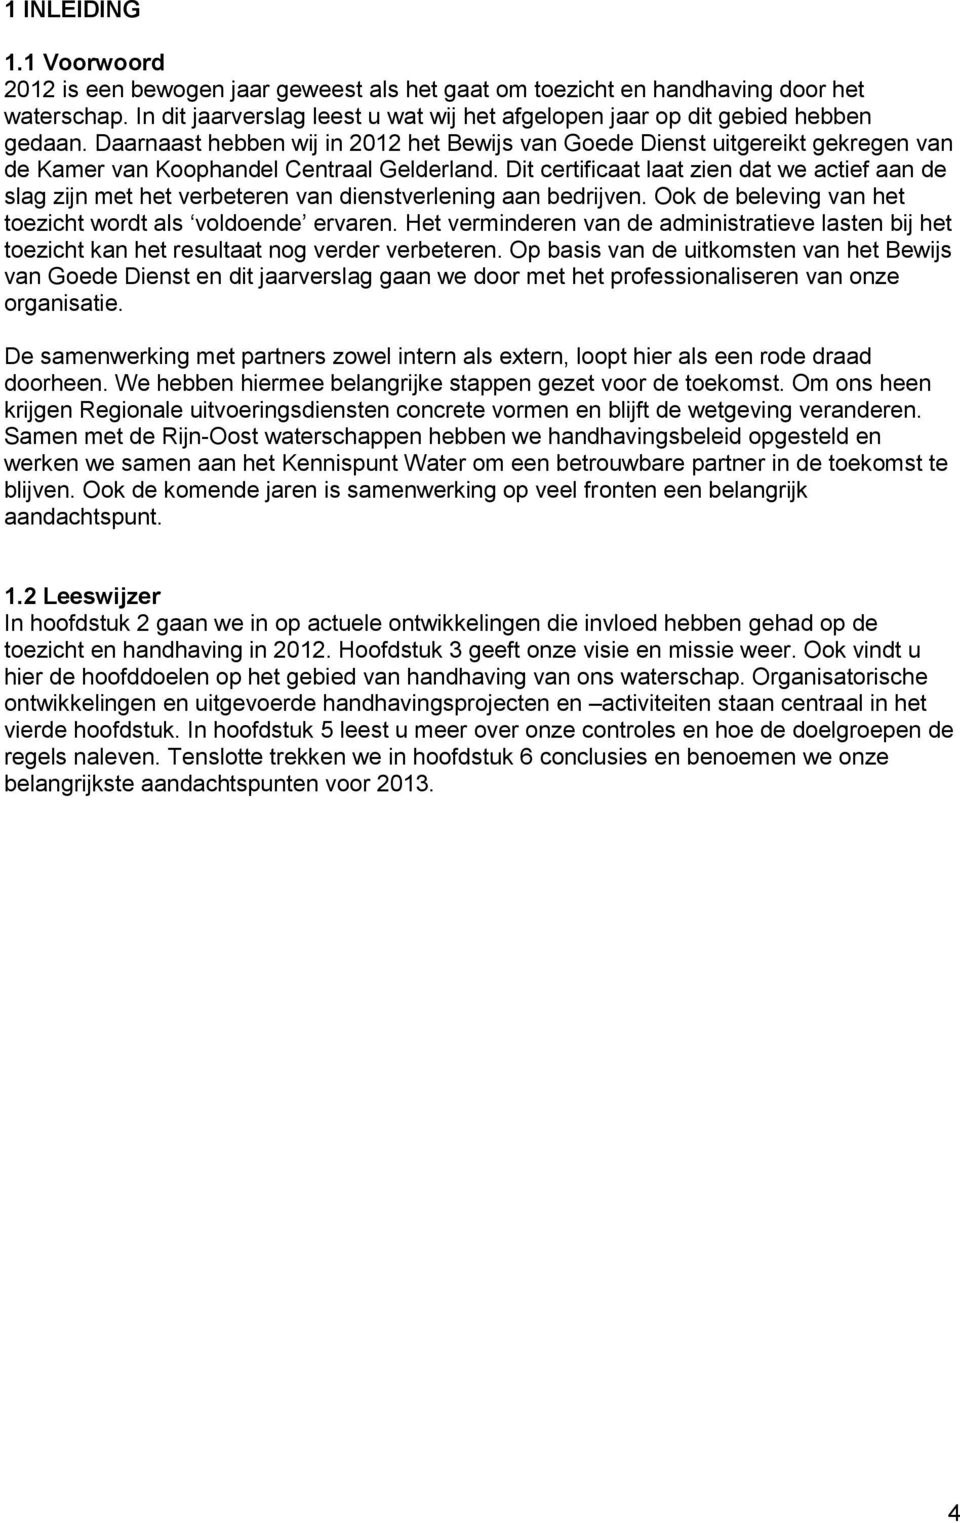 Daarnaast hebben wij in 2012 het Bewijs van Goede Dienst uitgereikt gekregen van de Kamer van Koophandel Centraal Gelderland.